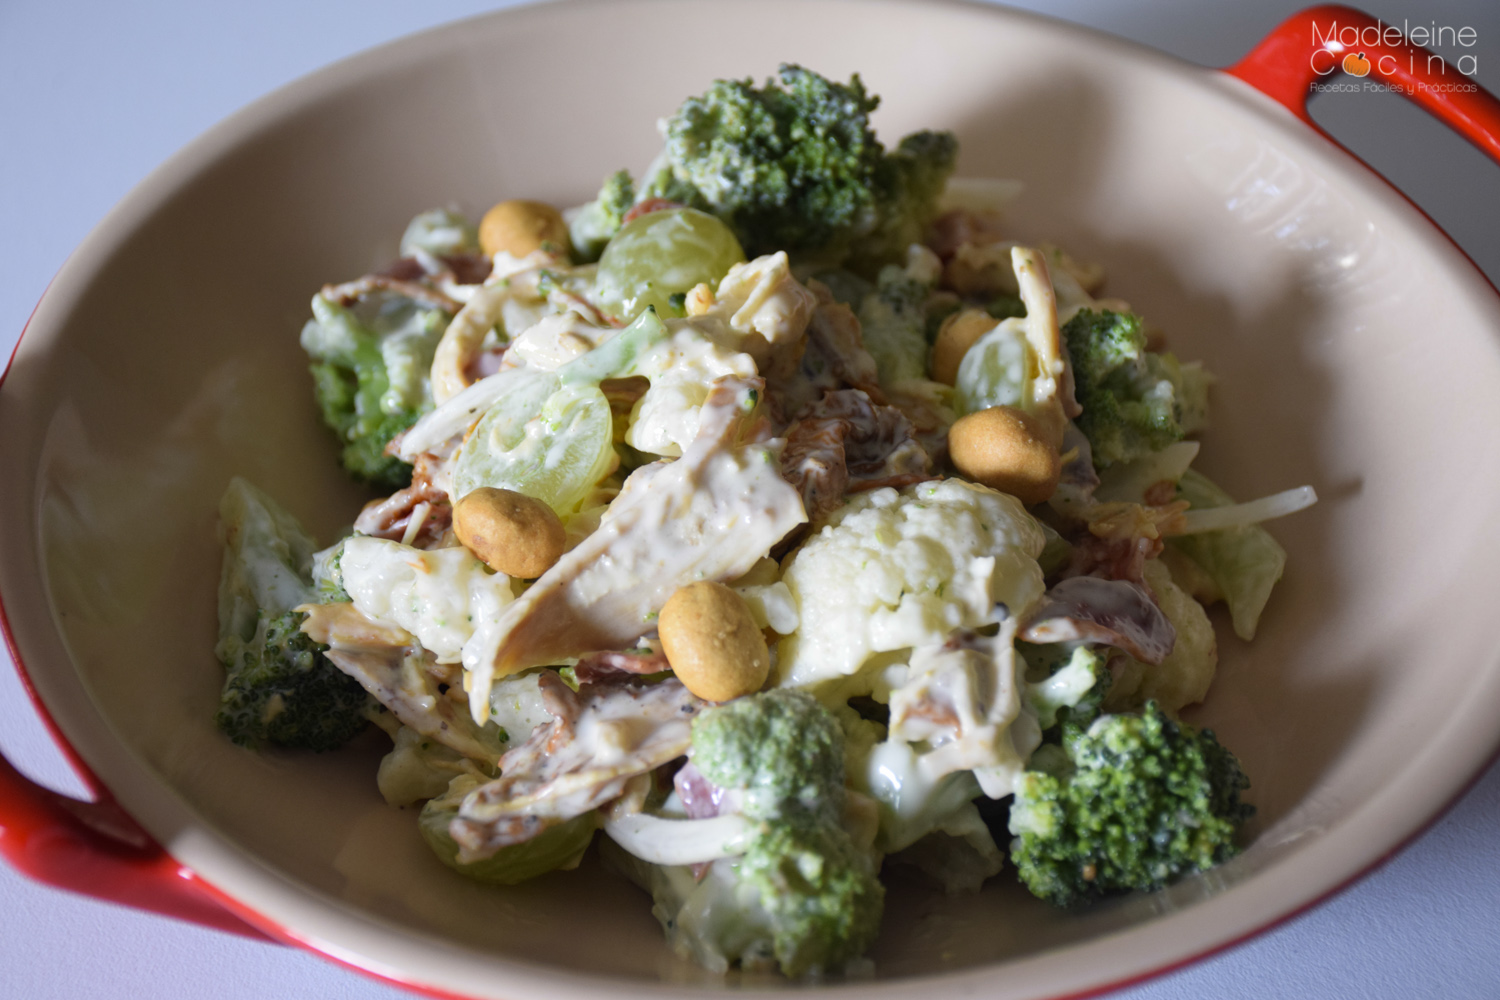 Ensalada fría de brócoli y coliflor | Madeleine Cocina